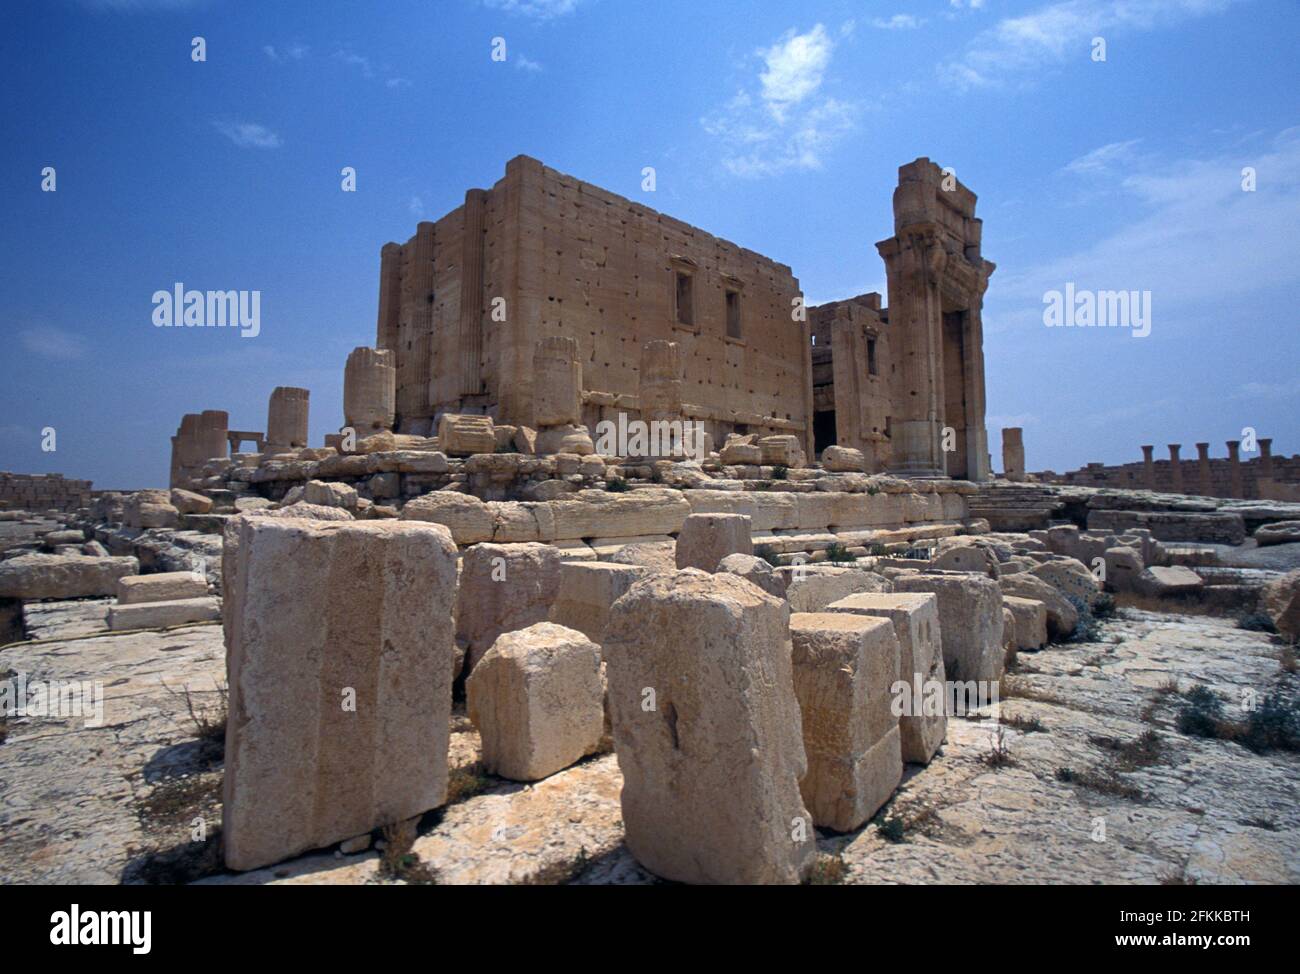 Tempel des Bel, bereits zerstört ISIL August 2015, Tempel des Baal, war eine alte steinerne Ruine befindet sich in Palmyra, Syrien Stockfoto